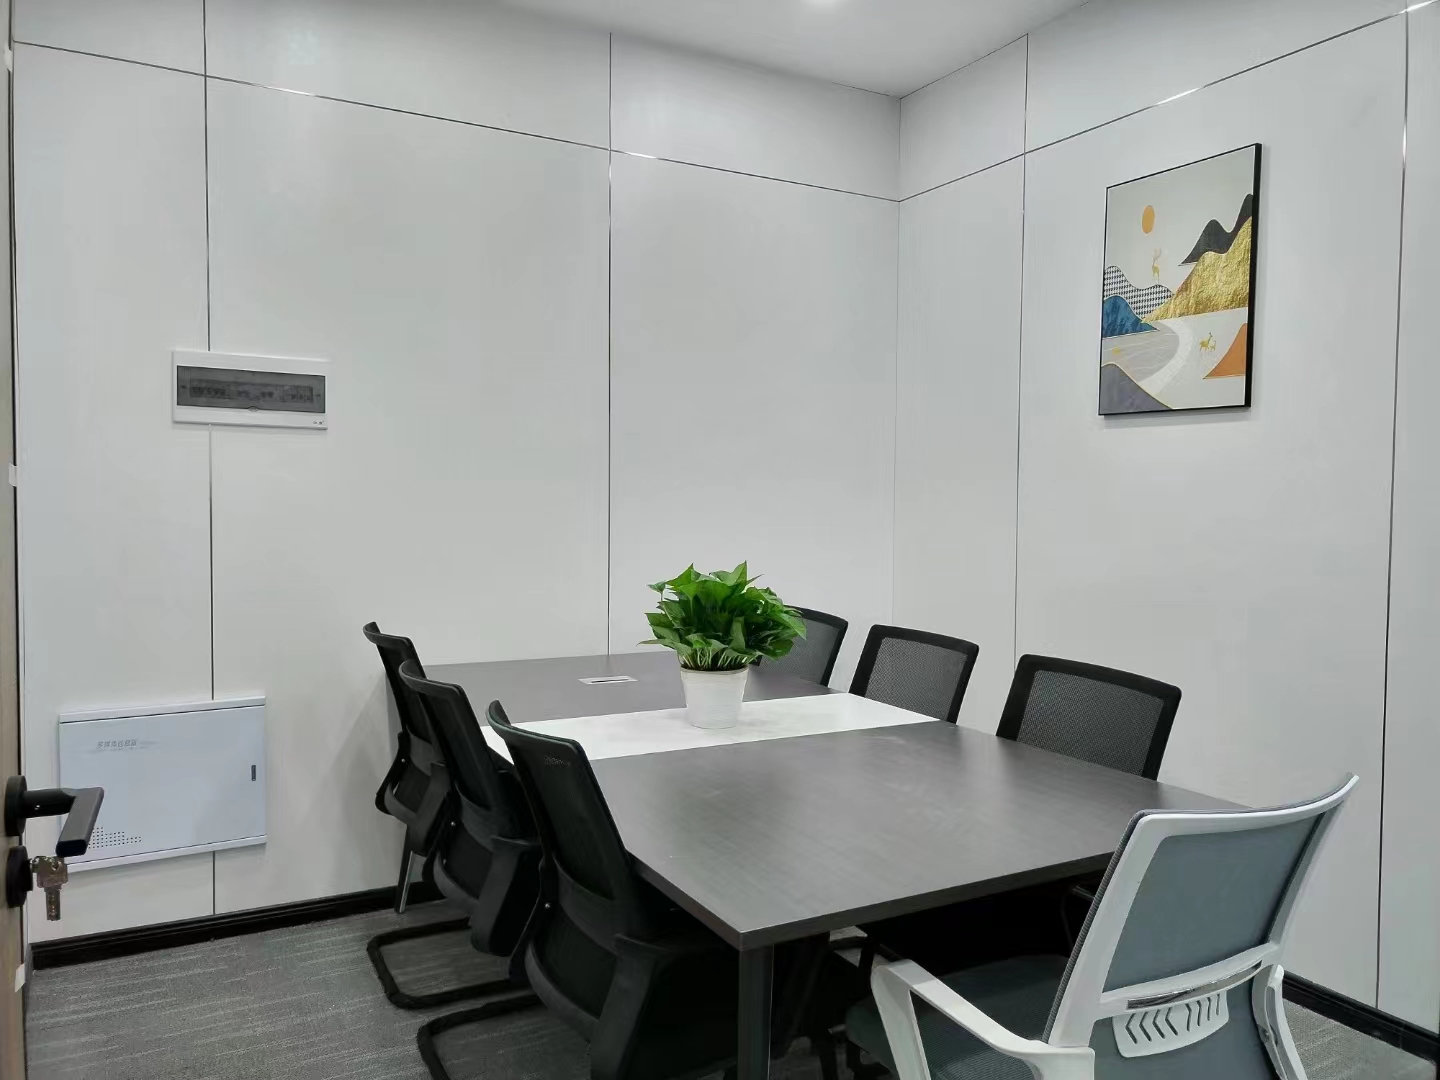 锦江区上普财富中心120平精装办公室带家具 户型方正  采光通透